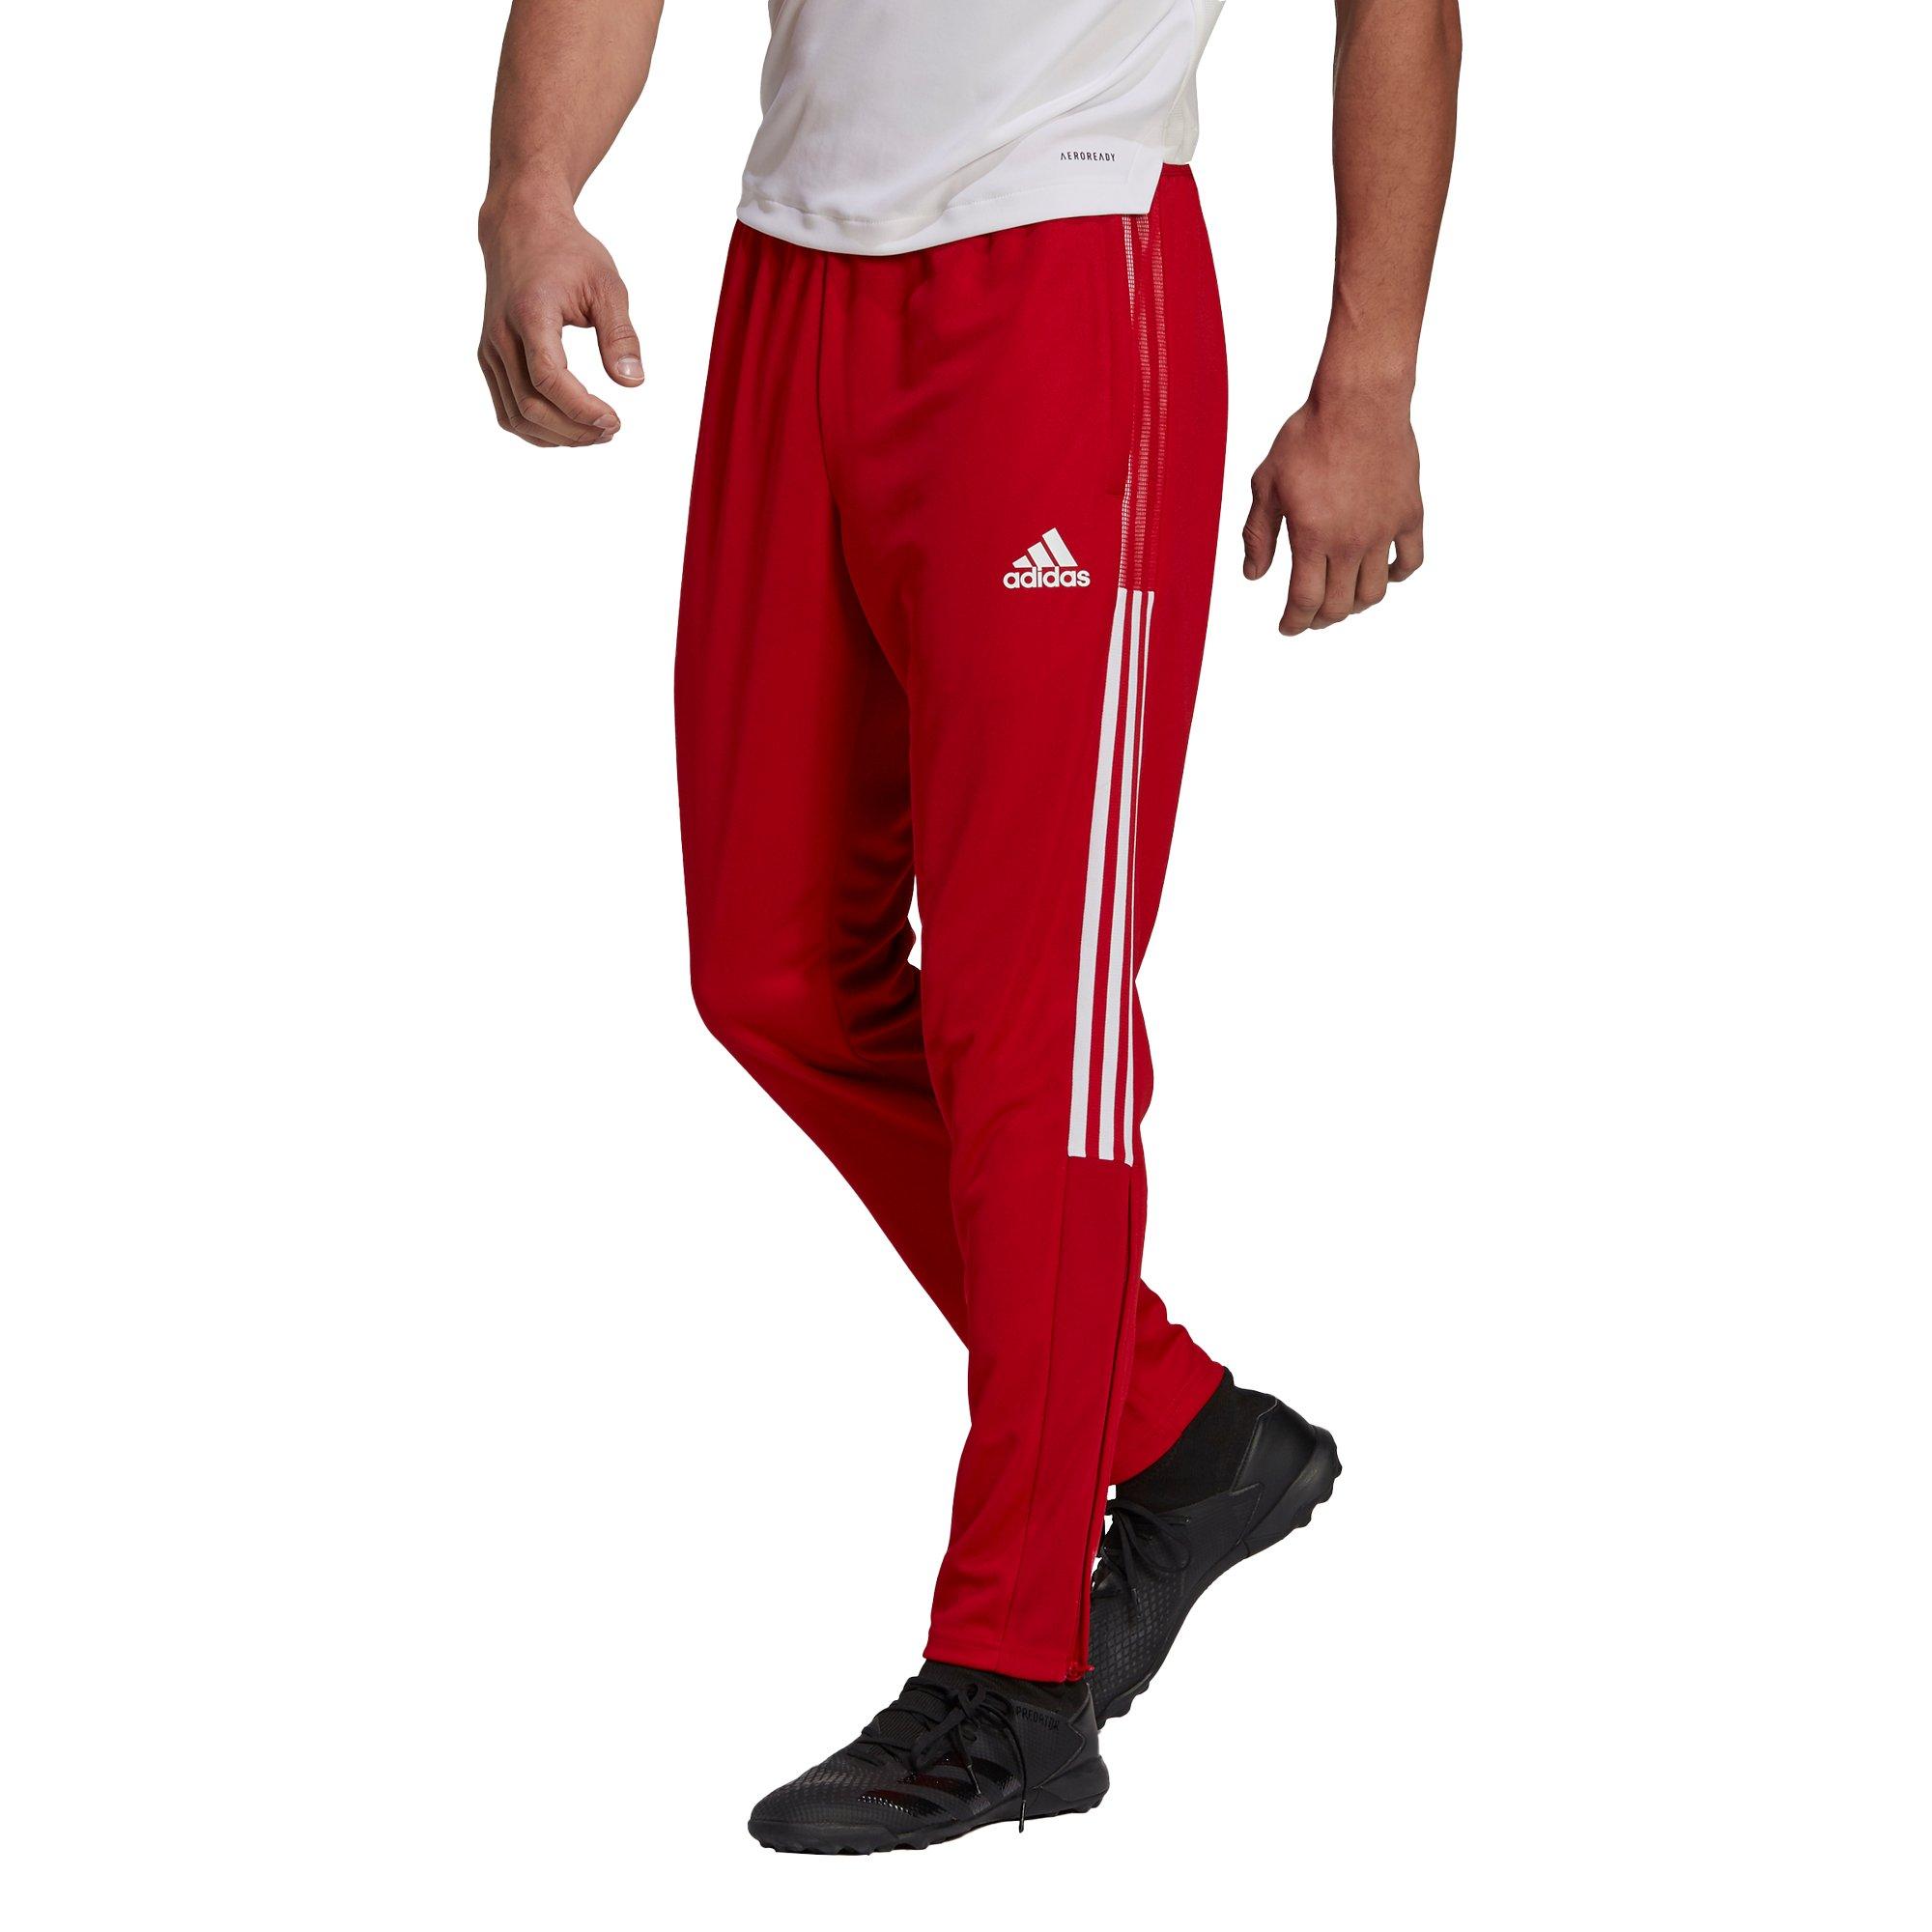 adidas Men's Tiro Training Pants Red